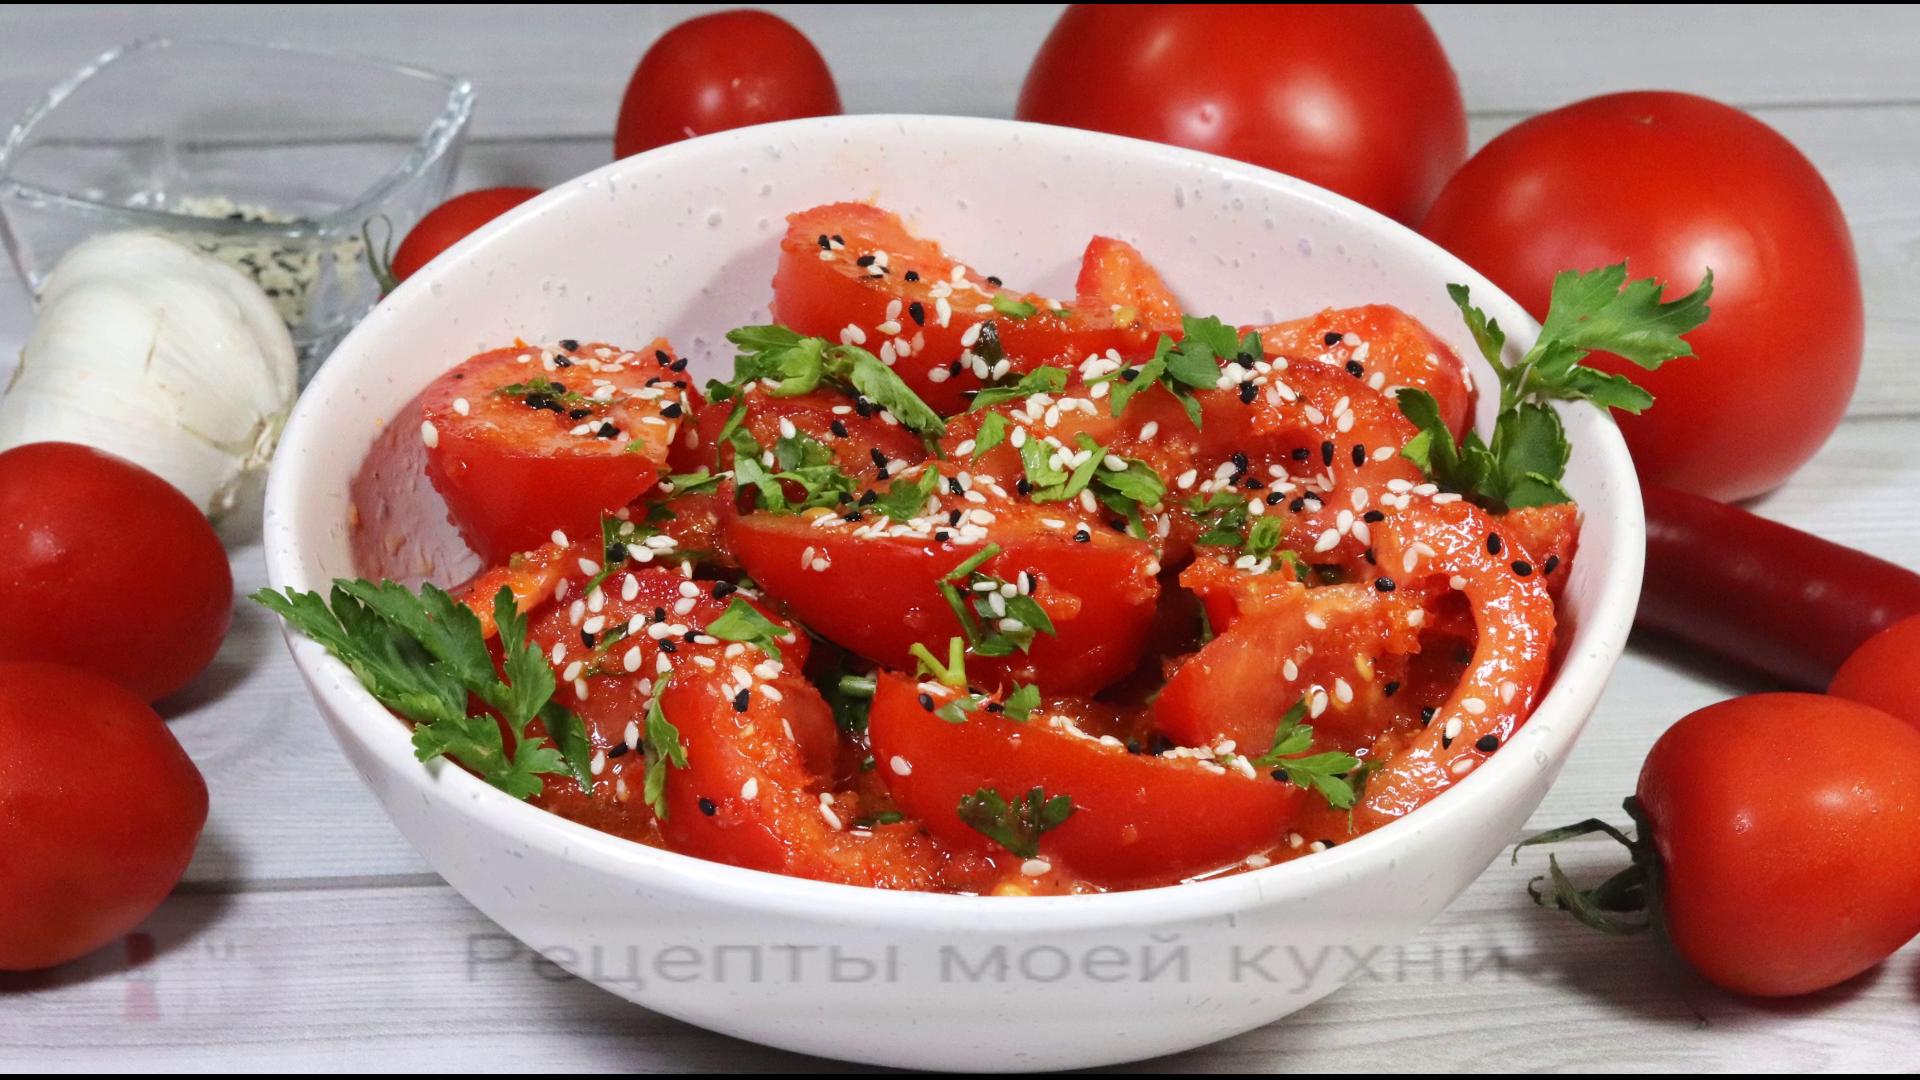 Свежие помидоры с быстрой острой заправкой и сладким перцем. Обалденно вкусно!